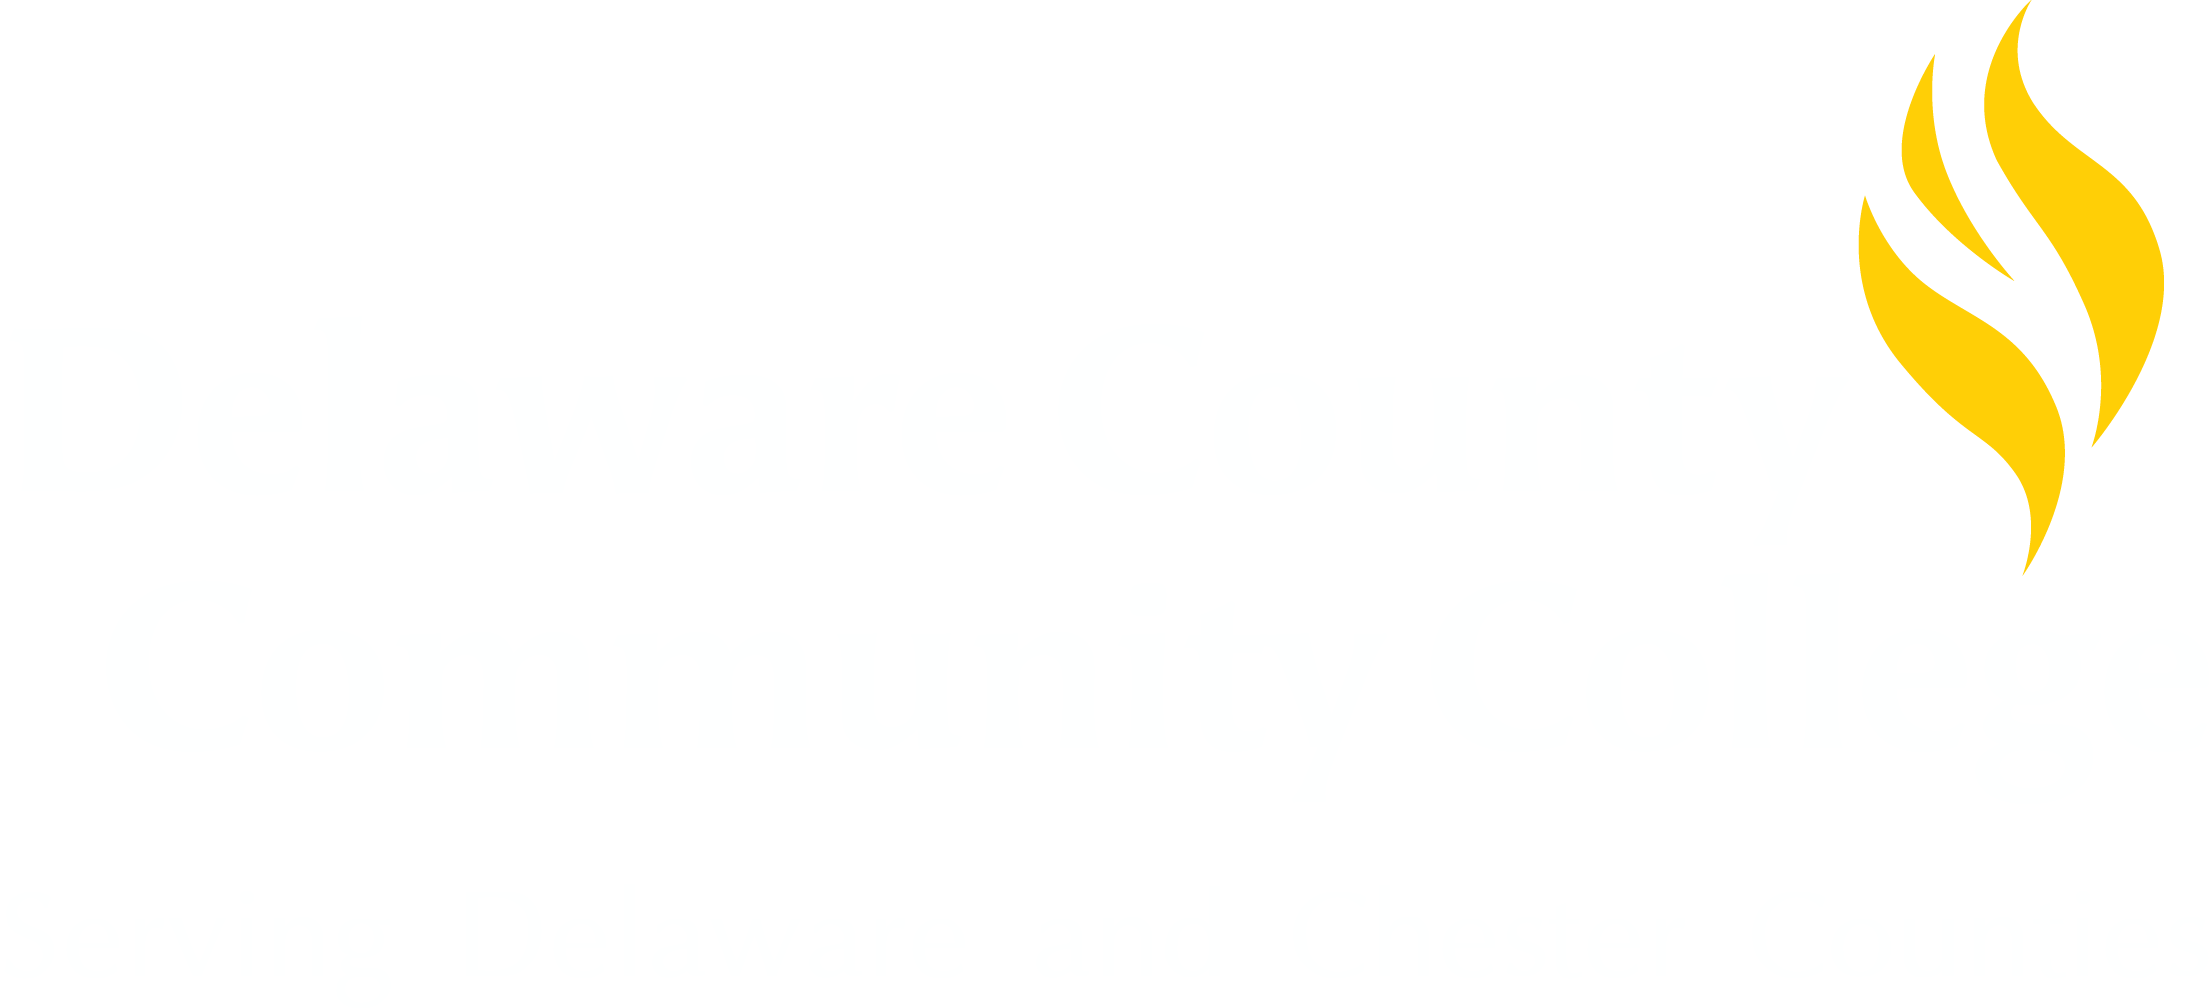 UPS Earn & Learn Program - Delaware County Community College